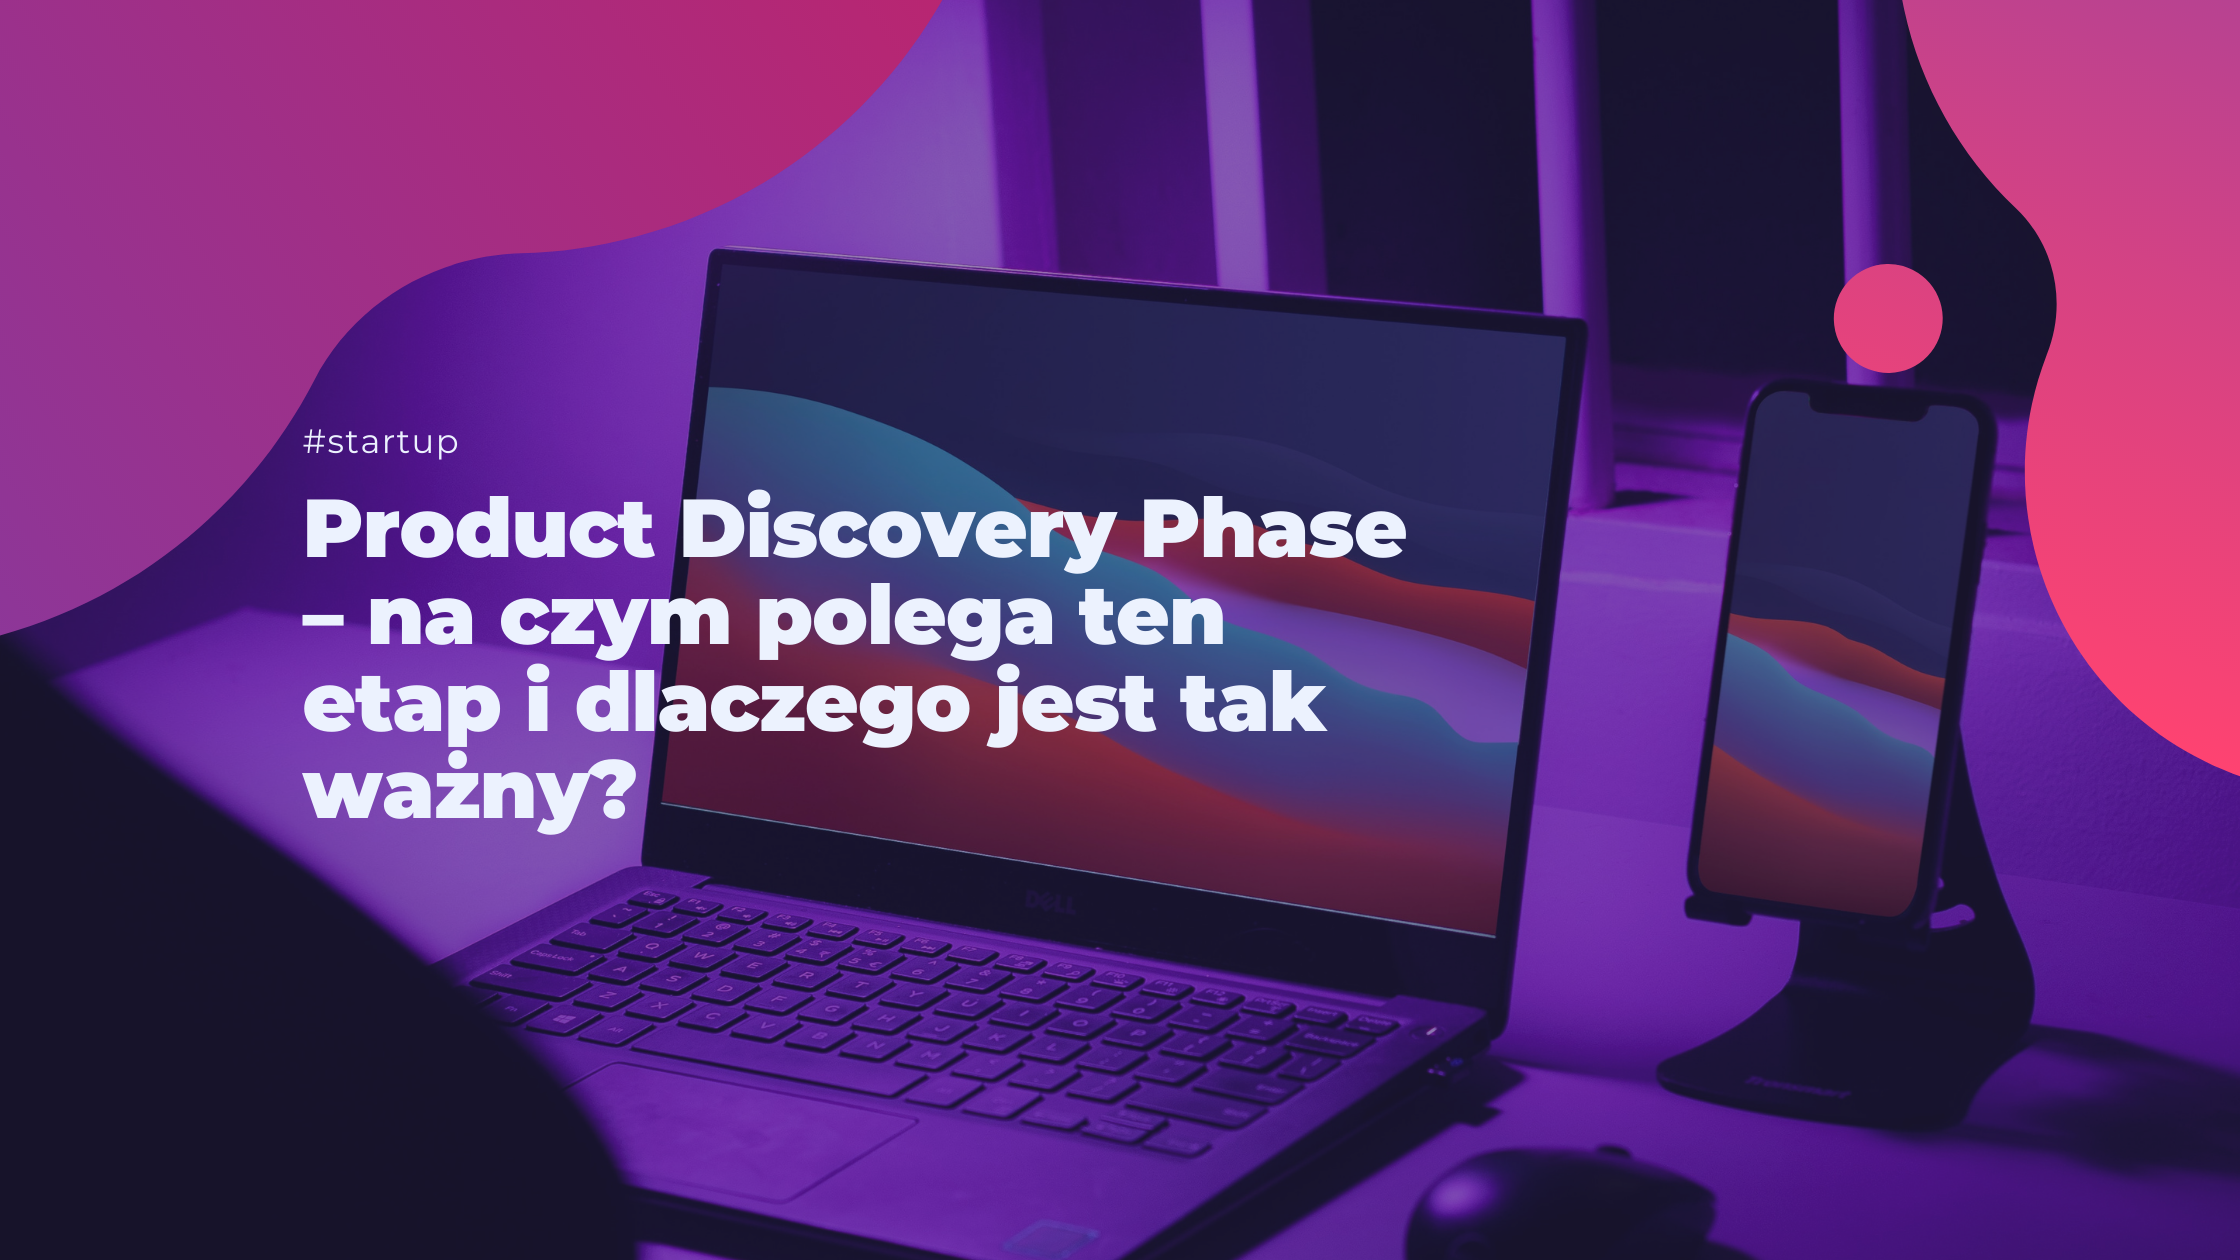 Product Discovery Phase – na czym polega ten etap i dlaczego jest tak ważny?